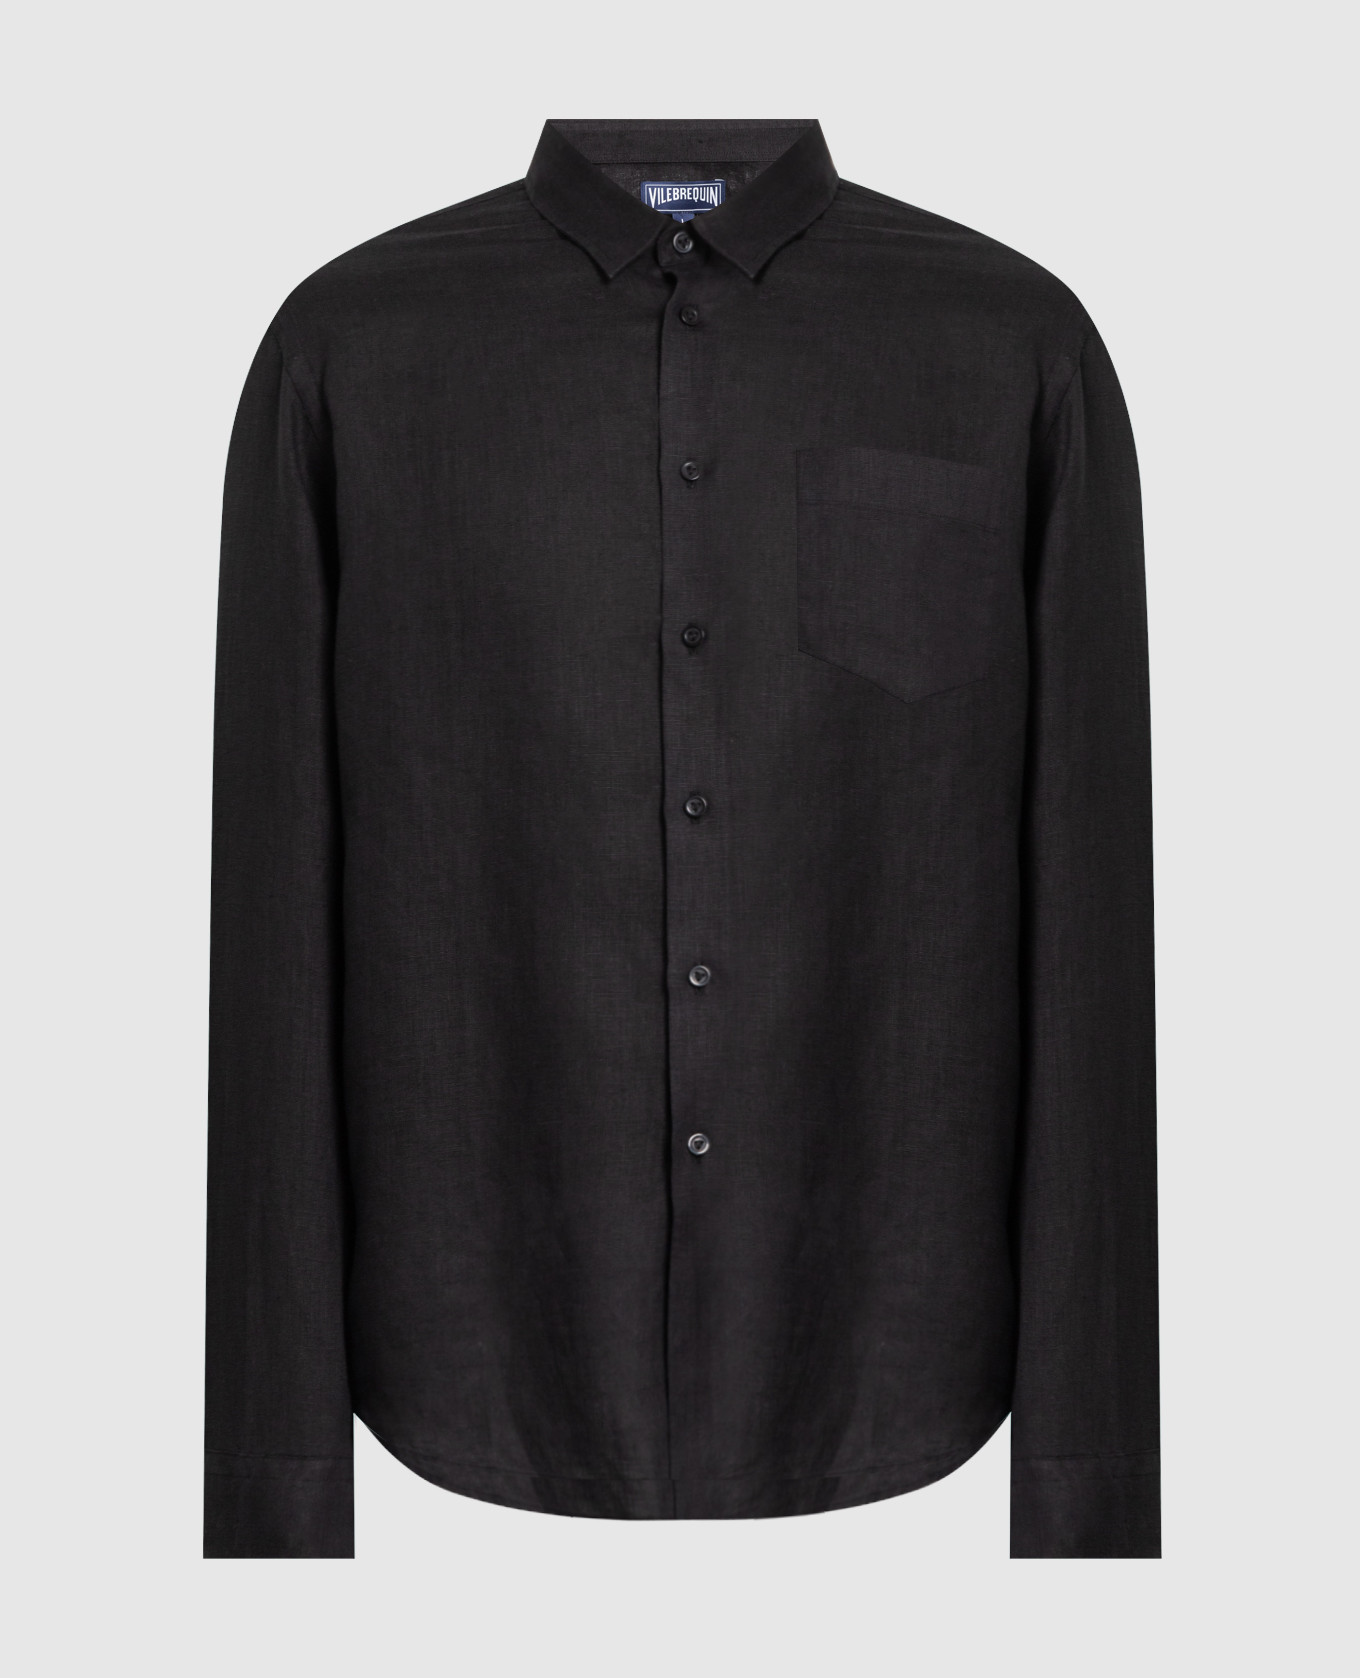 Черная рубашка Caroubis из льна с вышивкой логотипа